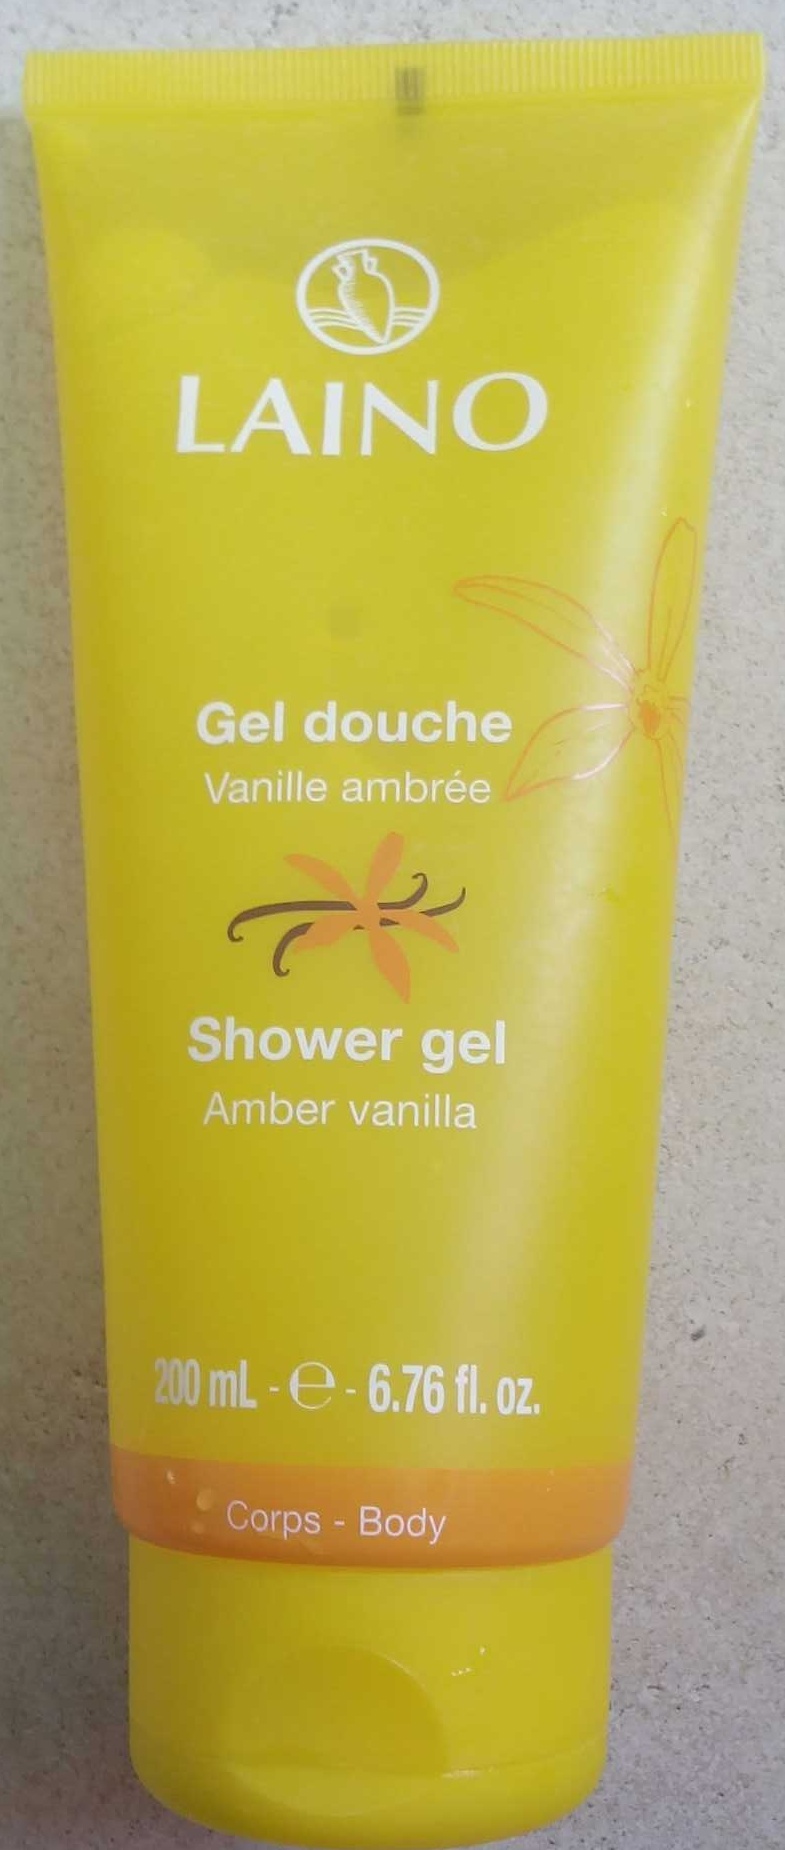 Gel douche Vanille ambrée - Product - fr